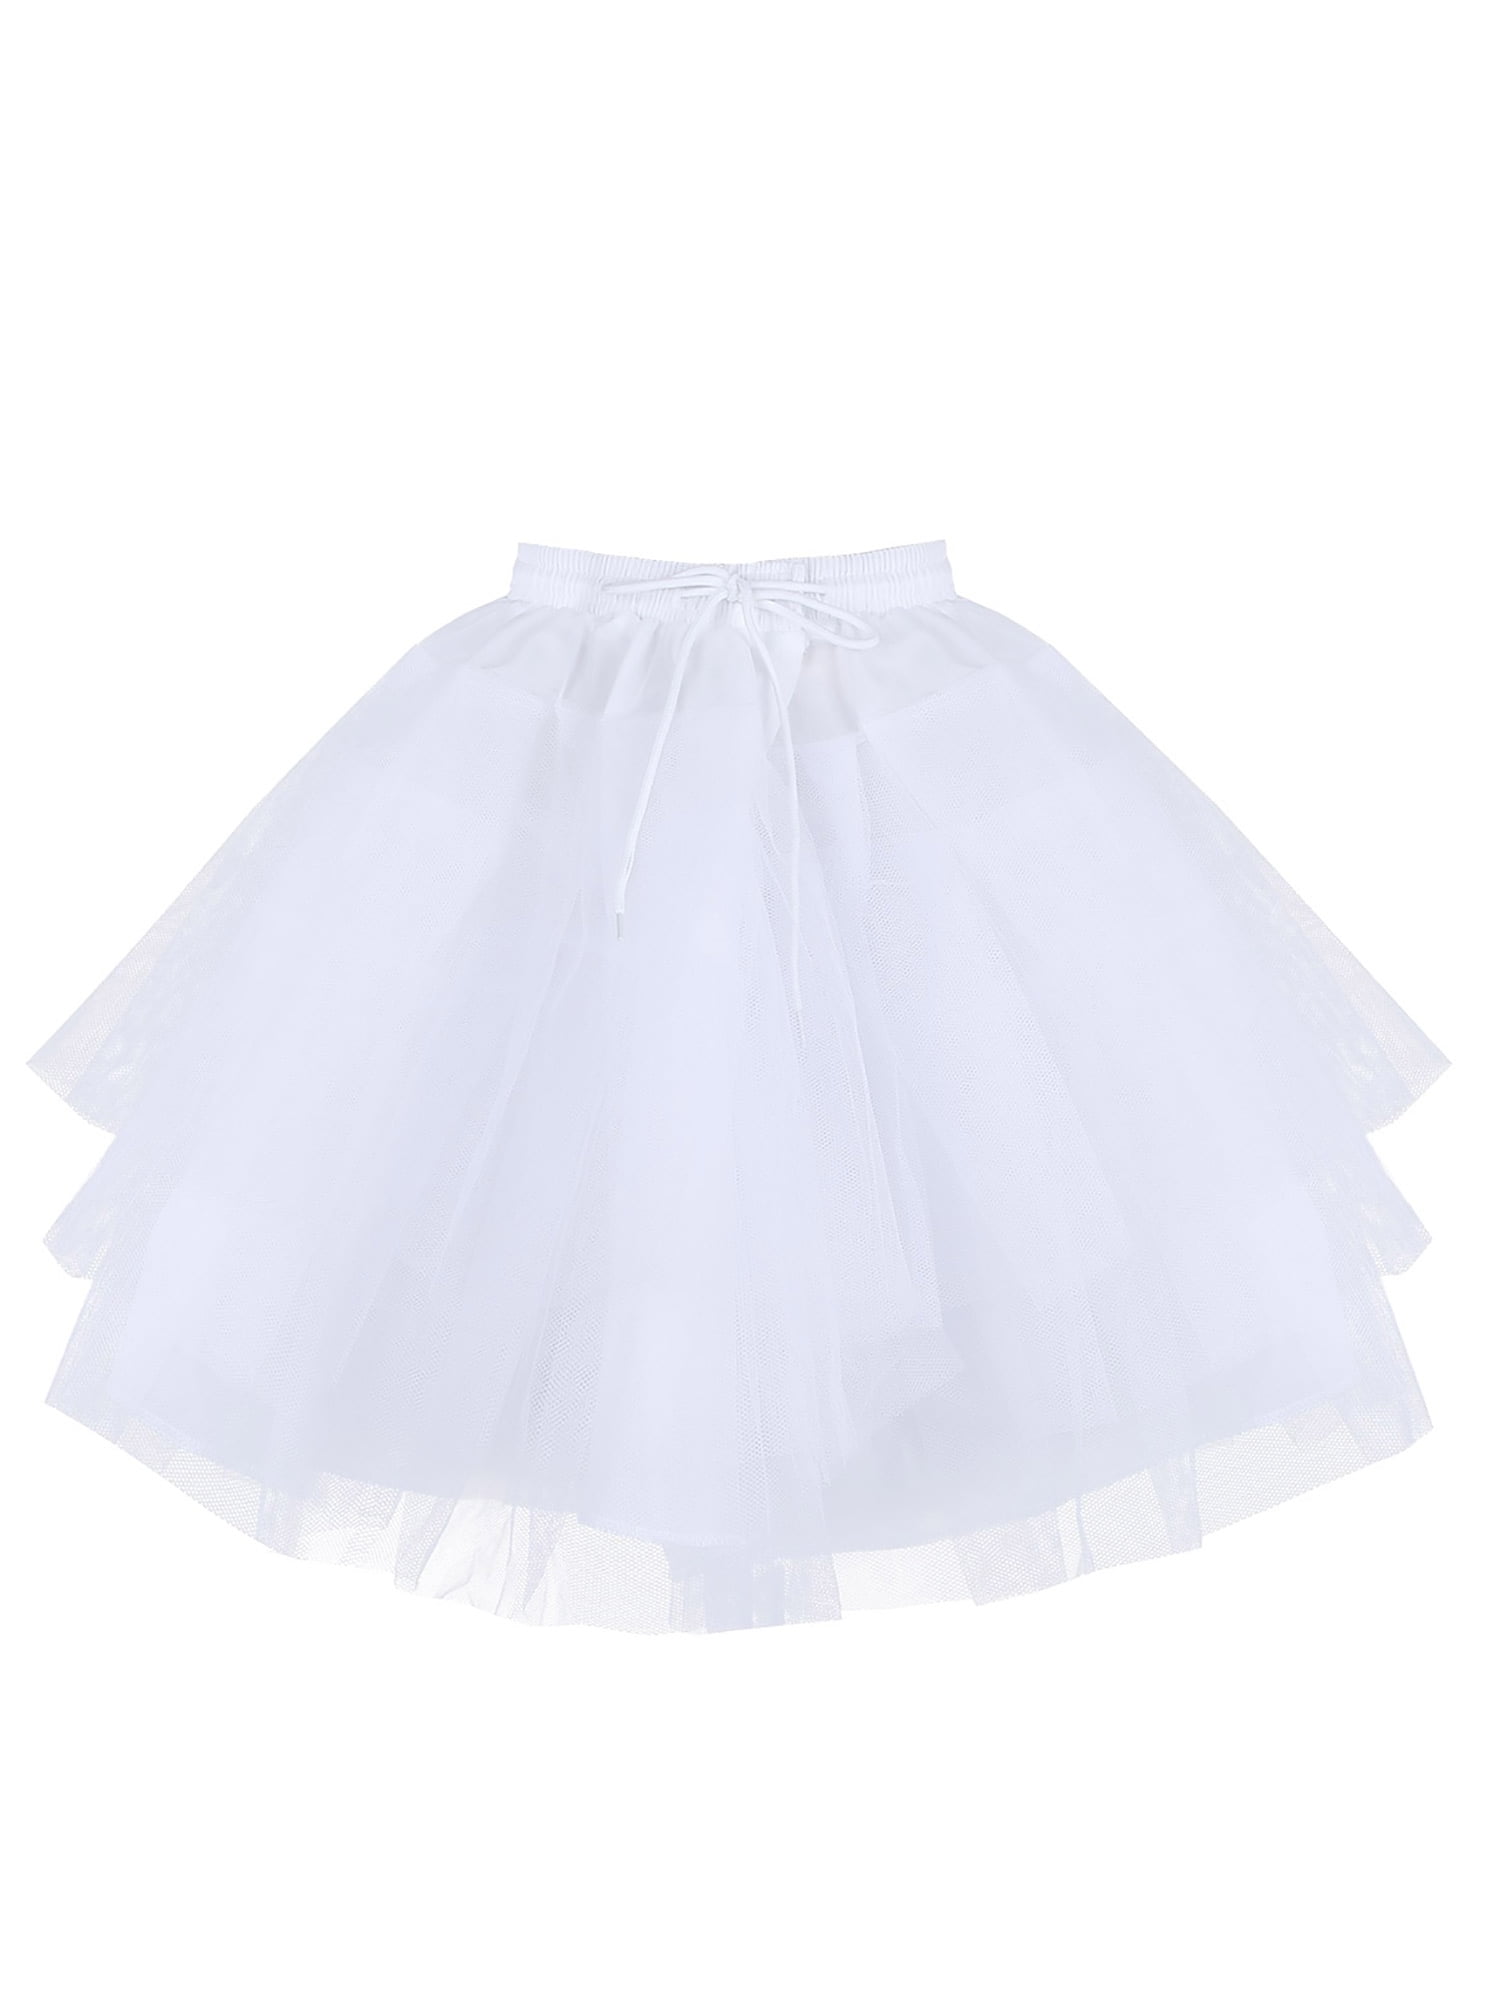 Kids Girls Petticoat Dress Tutu Crinoline Underskirt Slips Wedding Dress Costume 